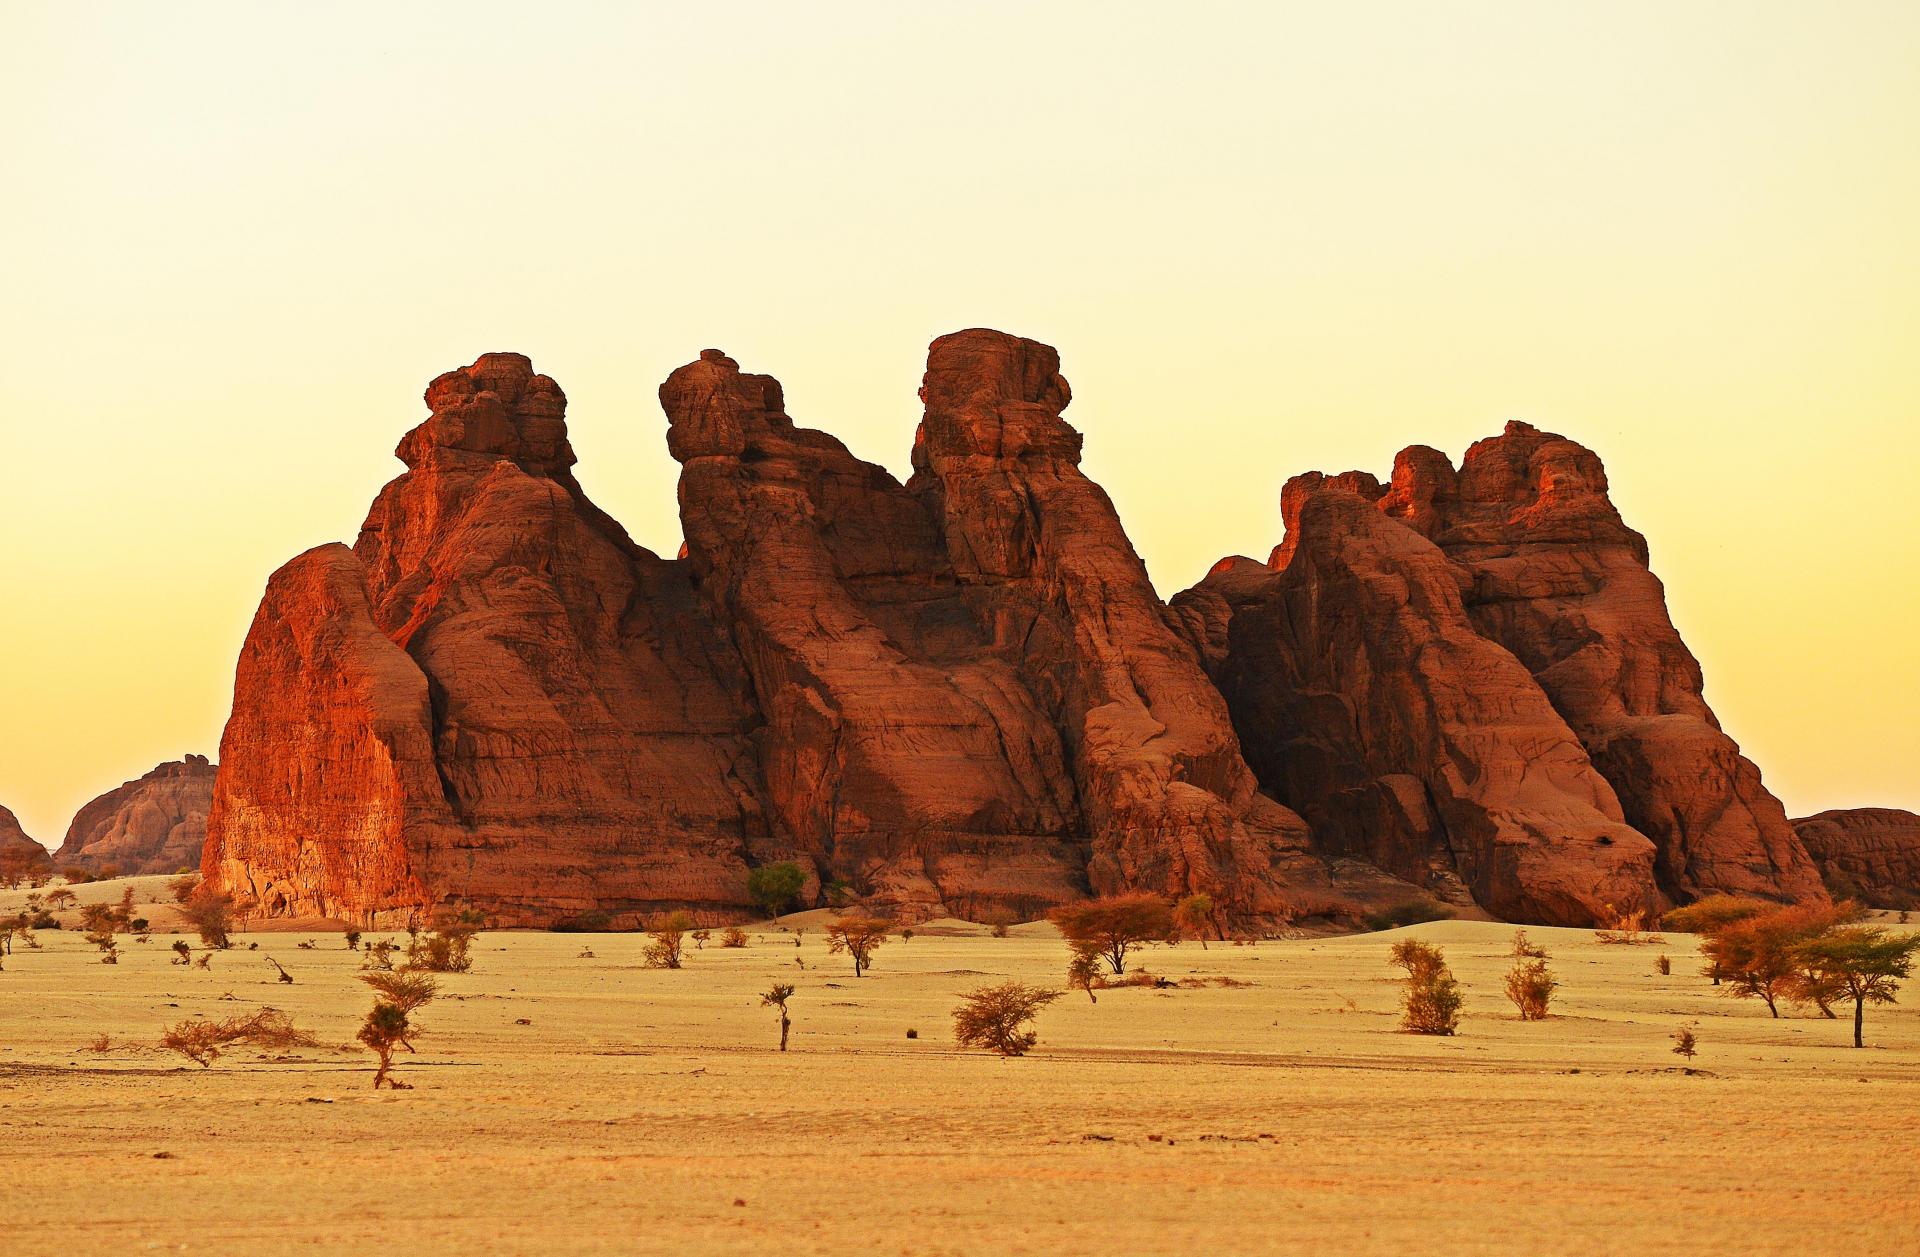 Landscape near Fada, northeastern Chad